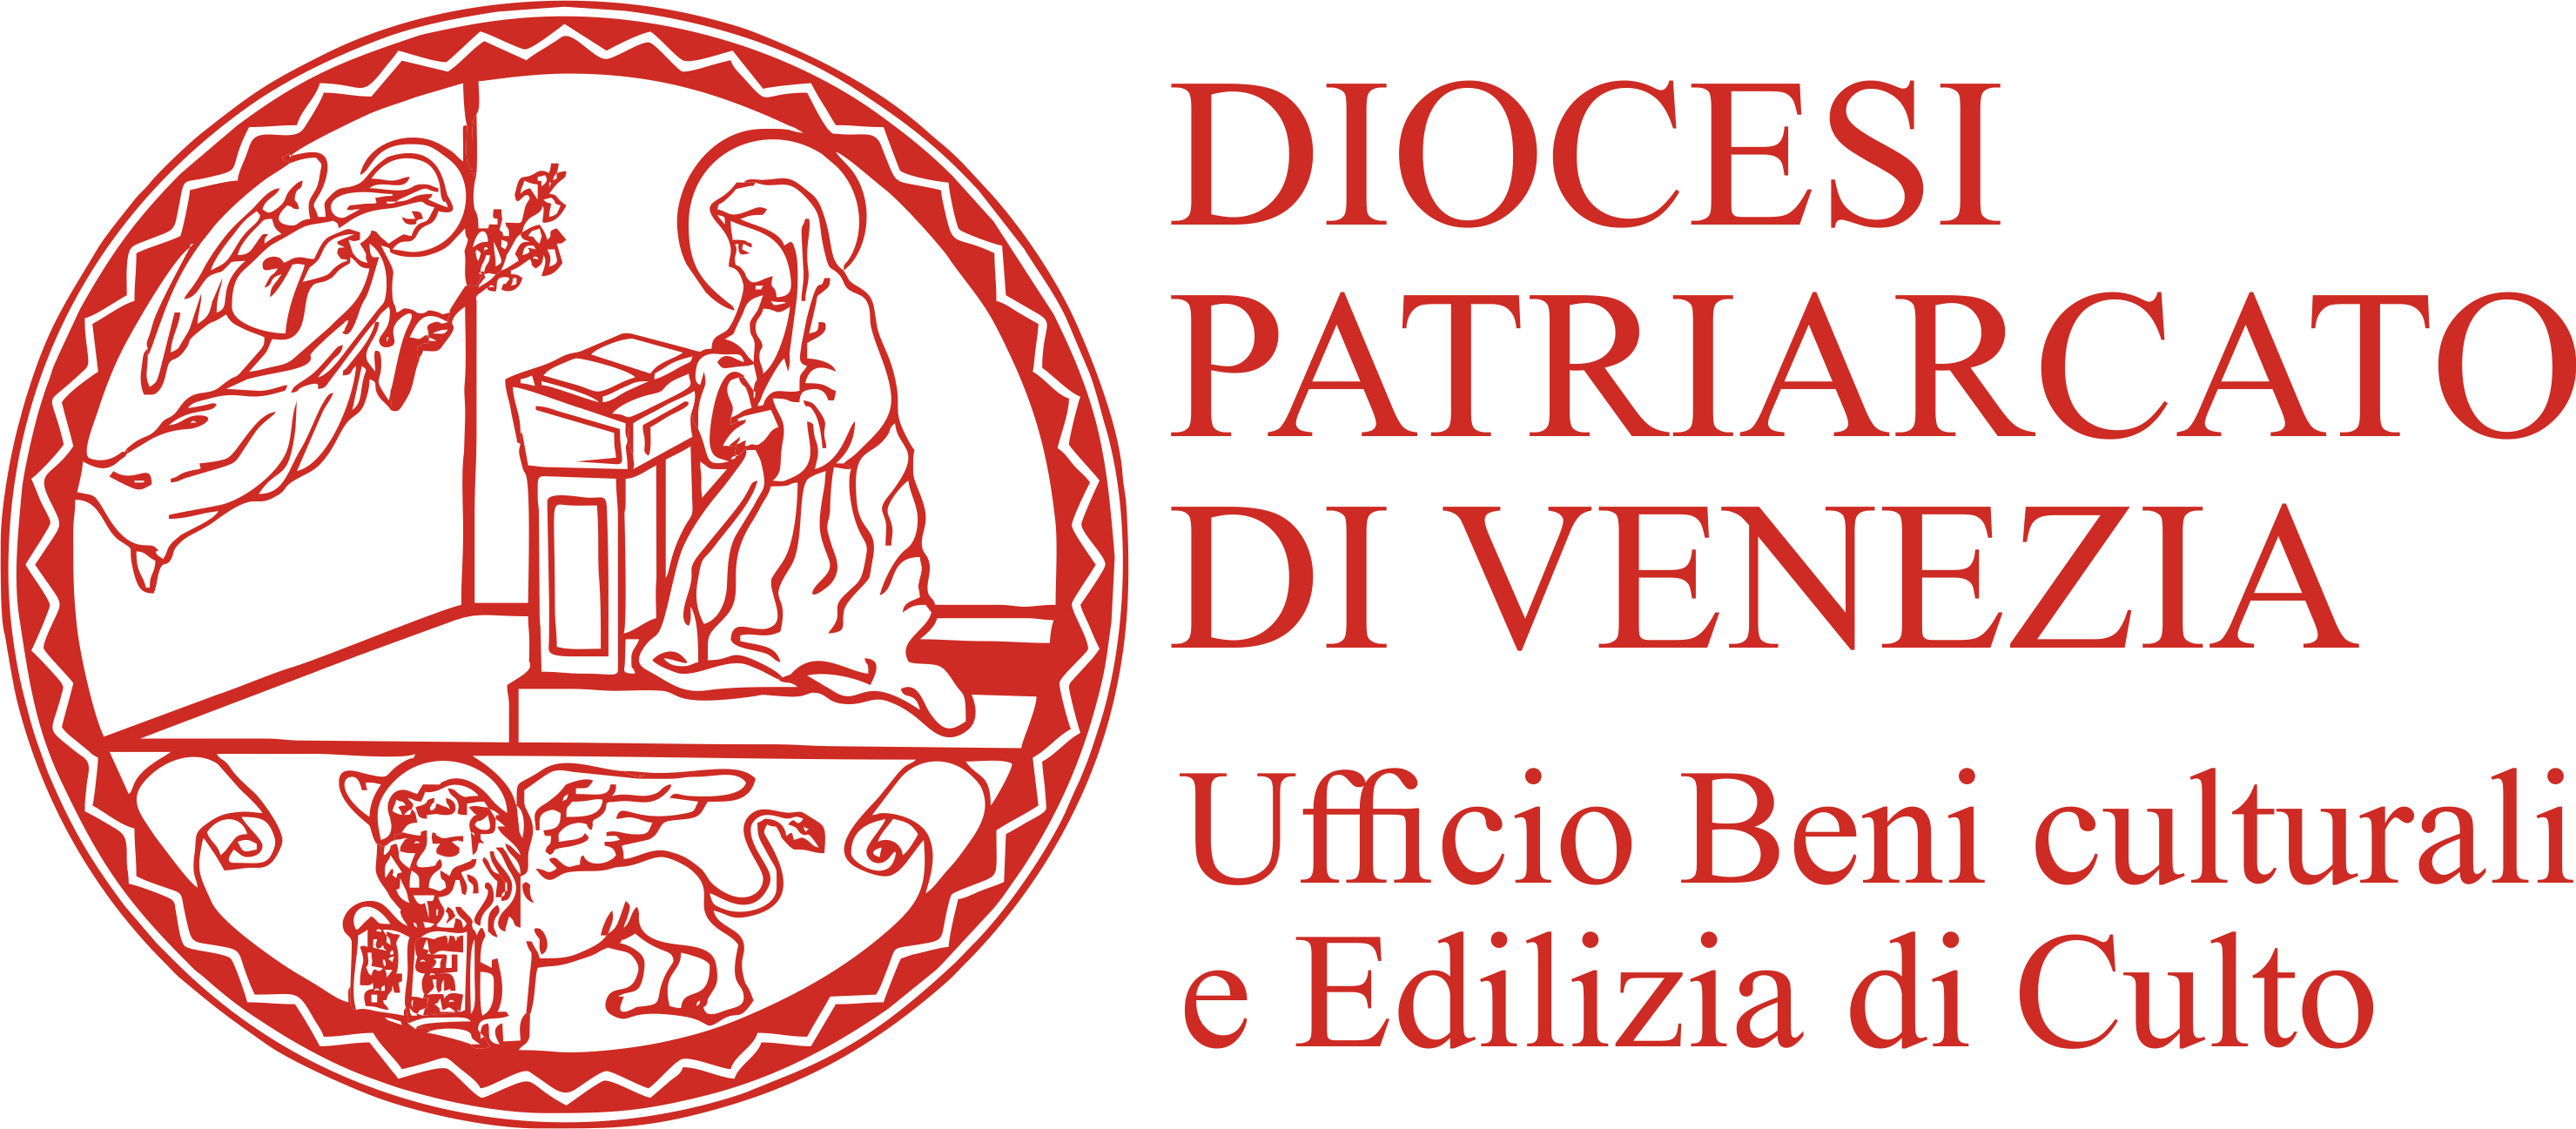 Diocesi Patriarcato di Venezia. Ufficio Beni Culturali e Edilizia di Culto